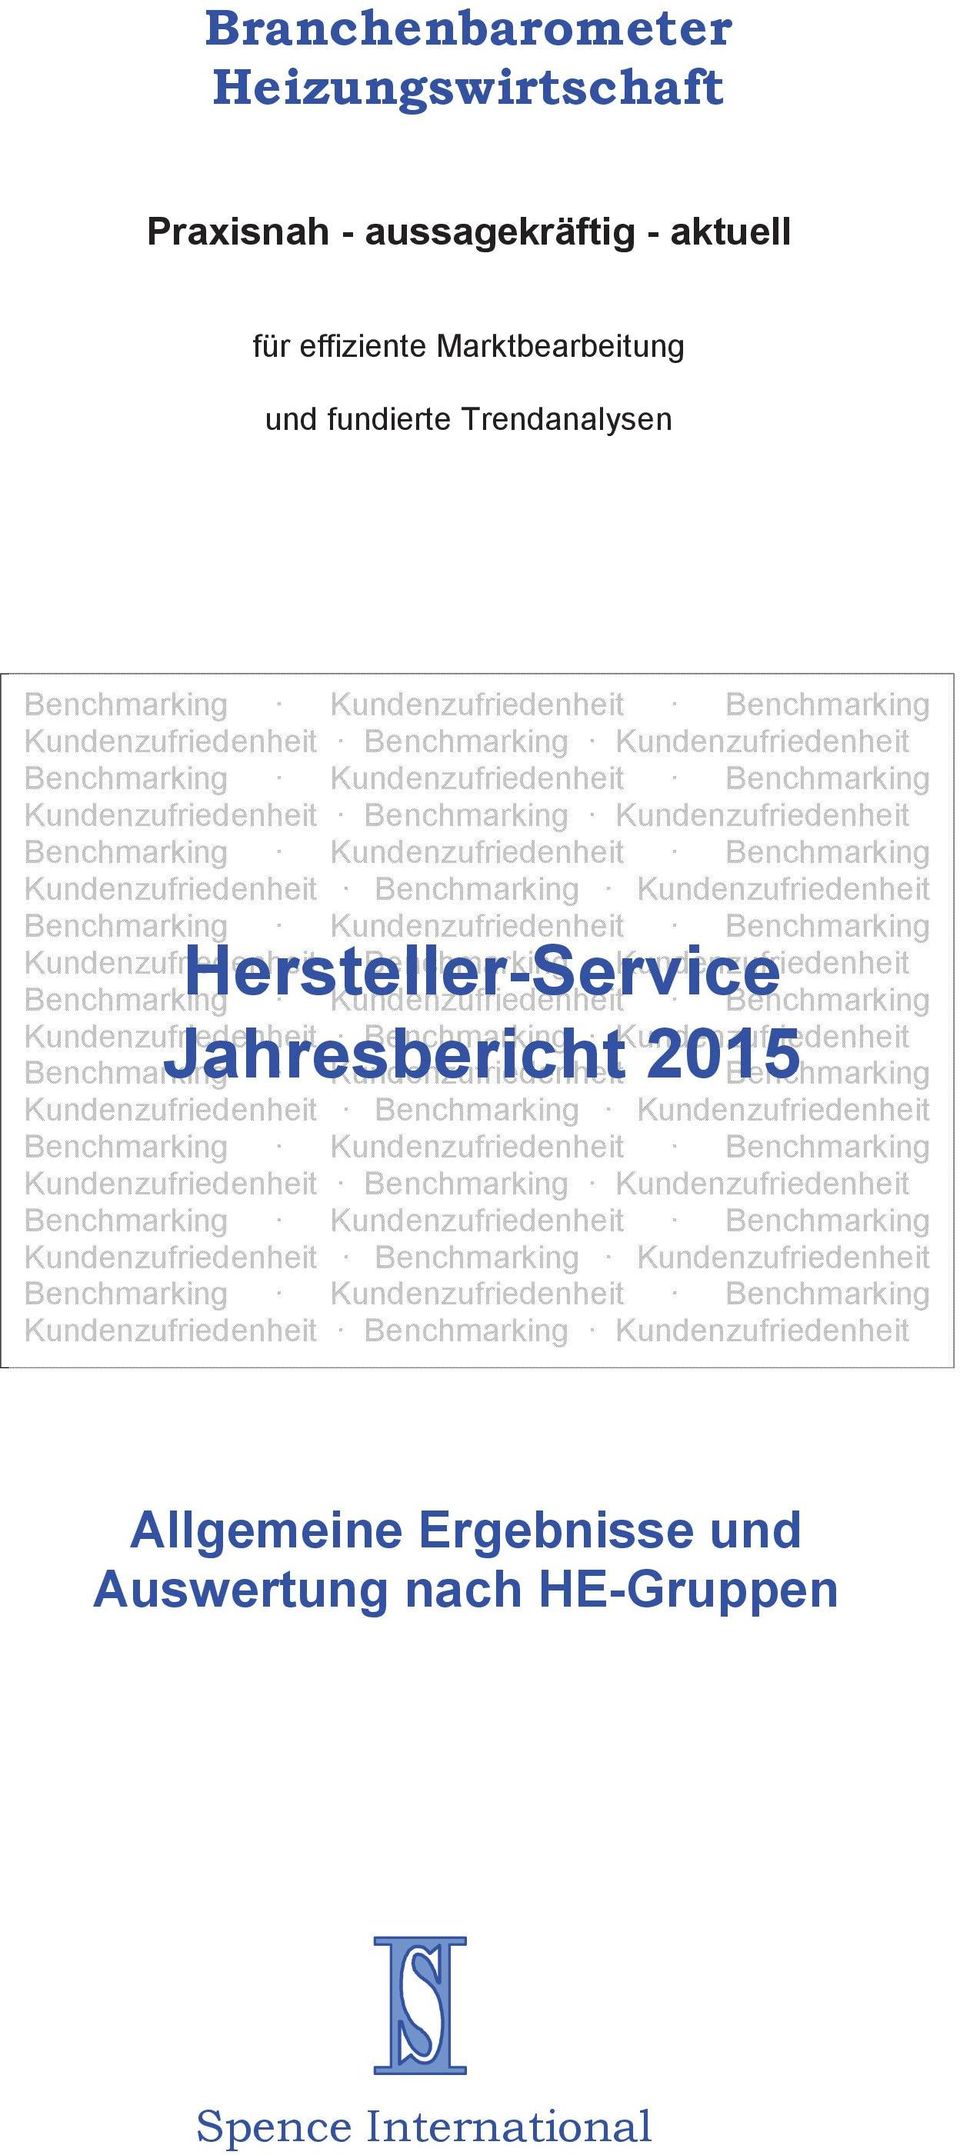 Hersteller-Service Benchmarking Jahresbericht